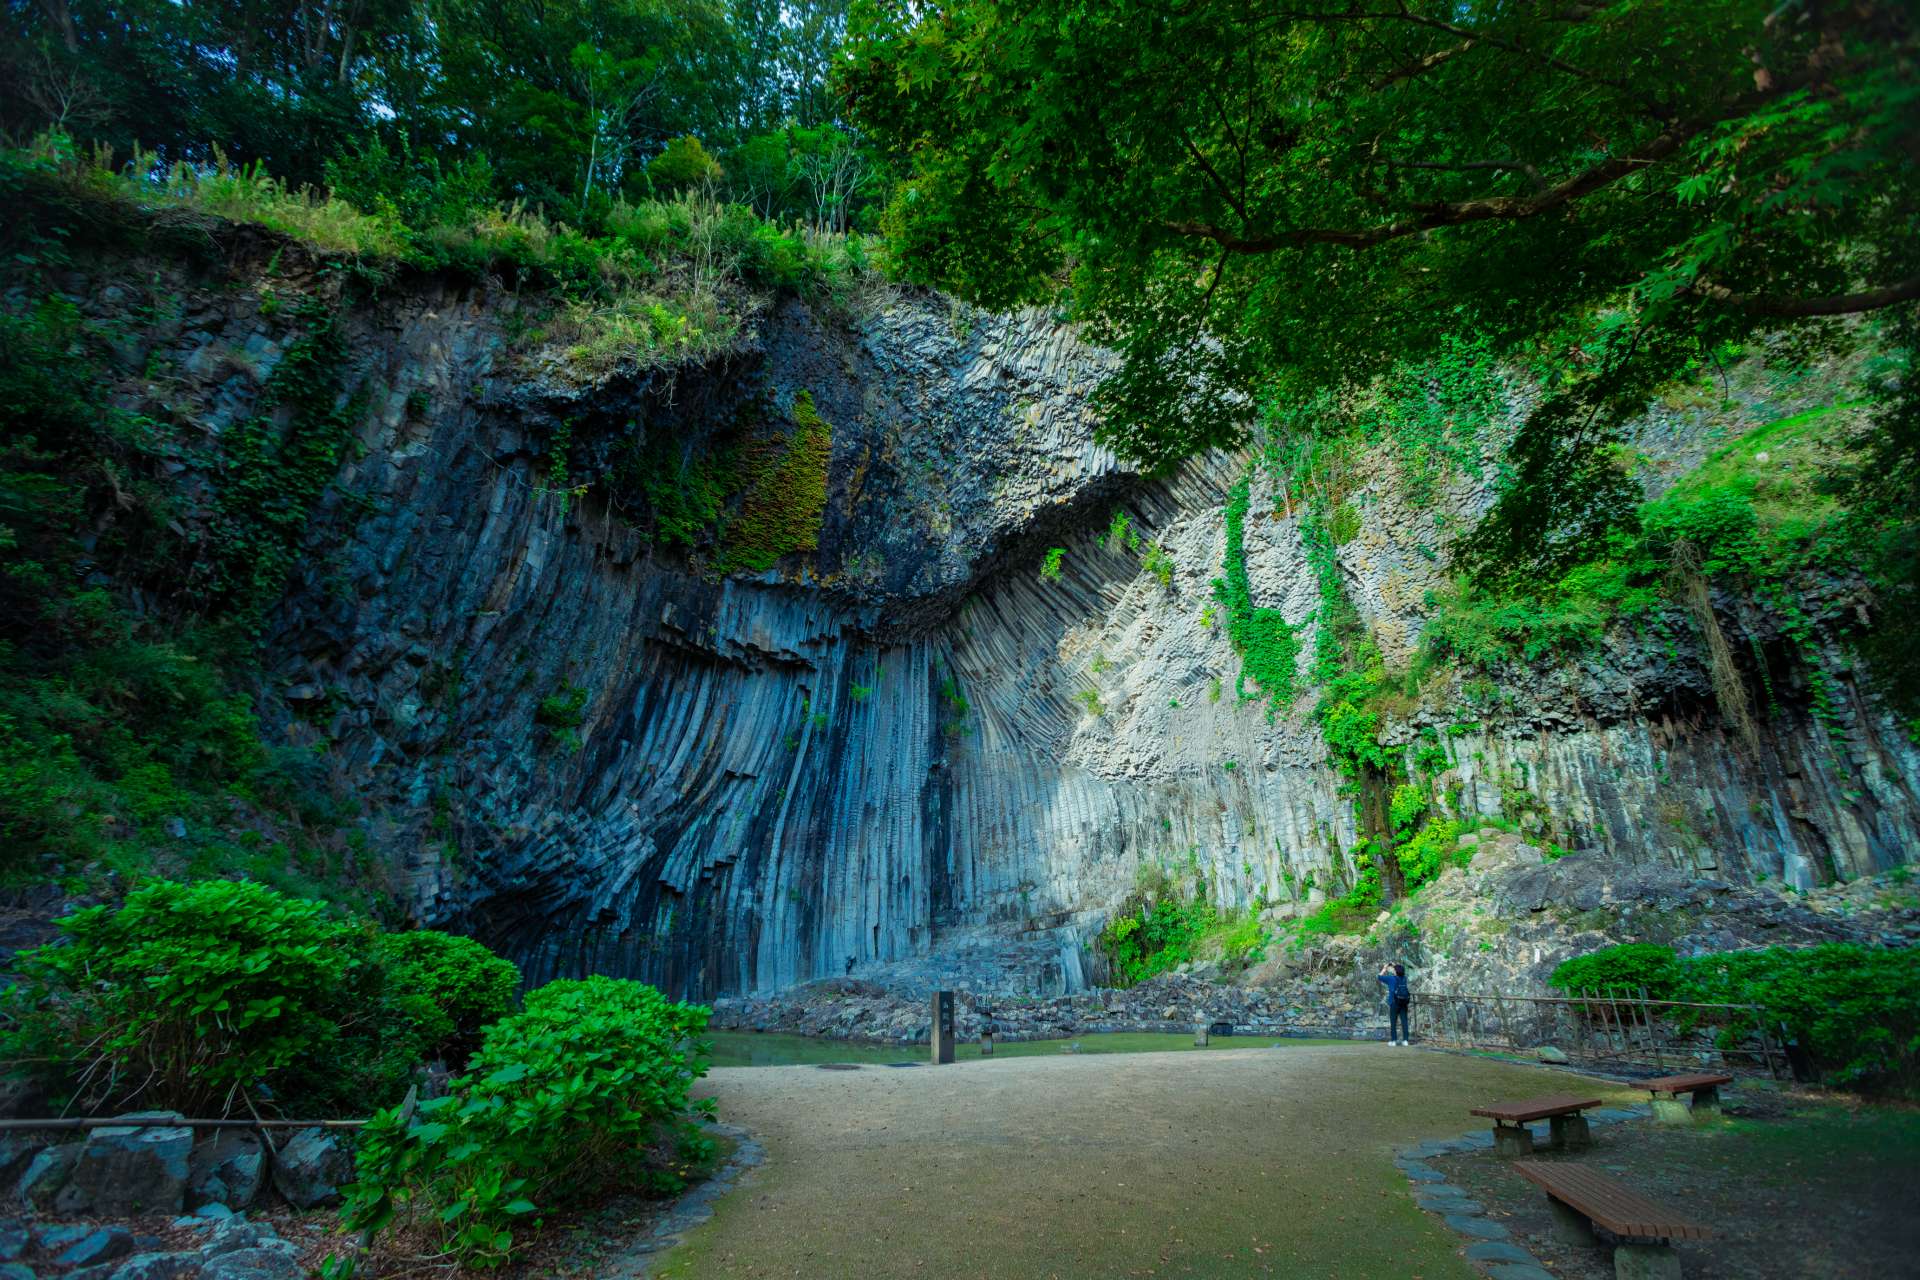 Dans le parc Genbudo, il y a aussi la grotte Seiryudo, la grotte Byakkodo et la grotte Suzakudo.